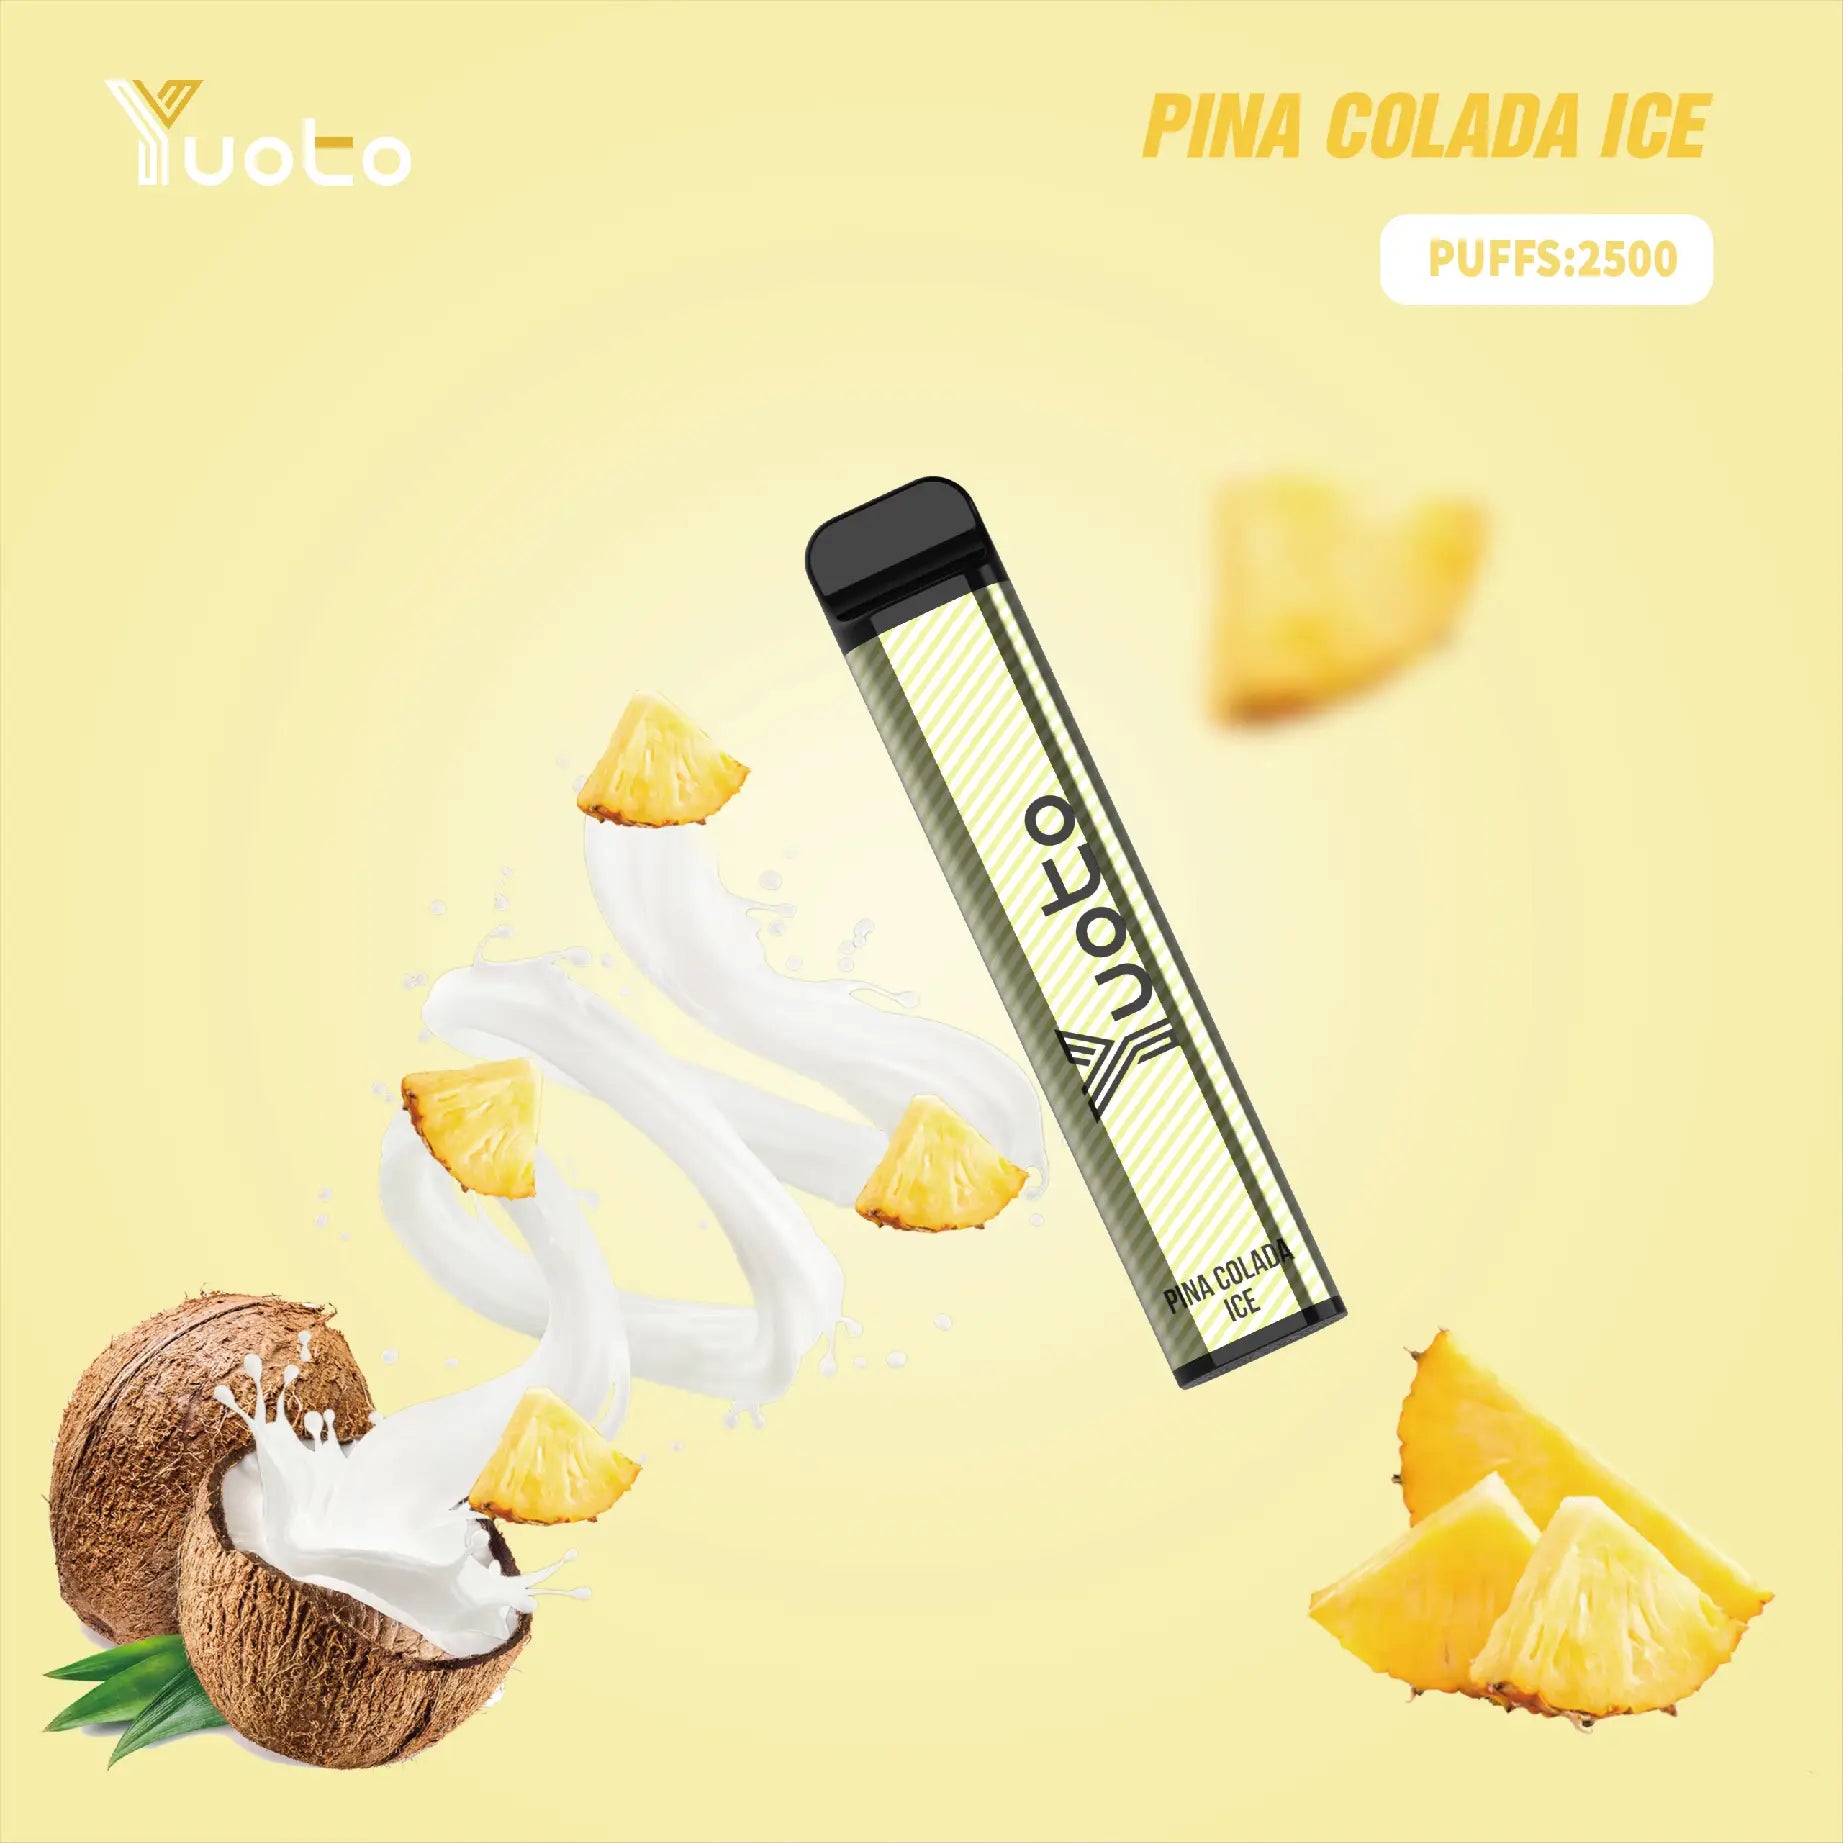 Välkommen till paradiset med Yuoto XXL Piña Colada Ice. Låt dig förföras av den tropiska smaken av färsk ananas och krämig kokosnöt, perfekt balanserad med en svalkande iskyla. Stäng ögonen, känn den mjuka sanden mellan tårna och låt dig bli omhändertagen av smakerna från exotiska stränder. Upplev en vaping-resa till paradiset med Yuoto XXL Piña Colada Ice.